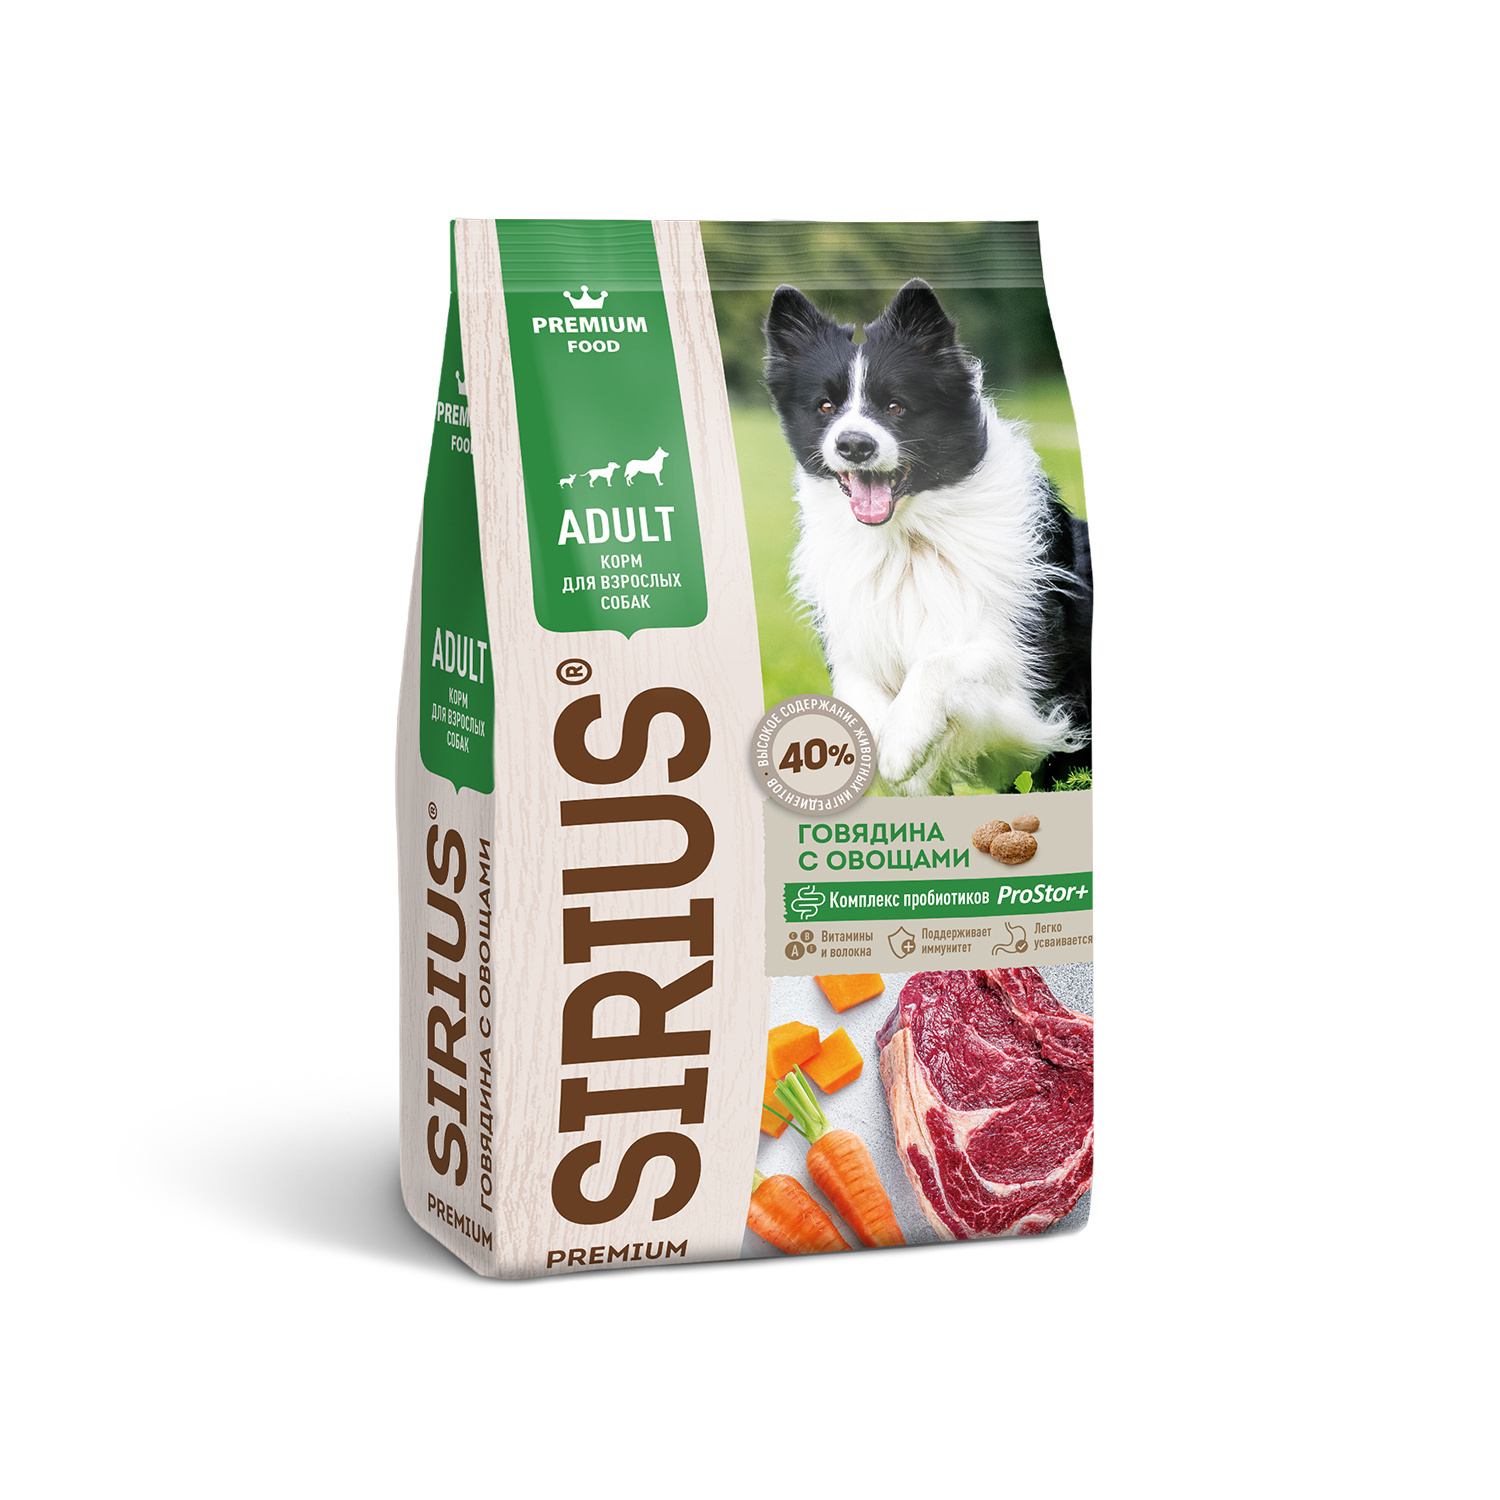 Sirius Sirius сухой корм для собак, говядина с овощами (2 кг) sirius sirius сухой корм для собак говядина с овощами 2 кг